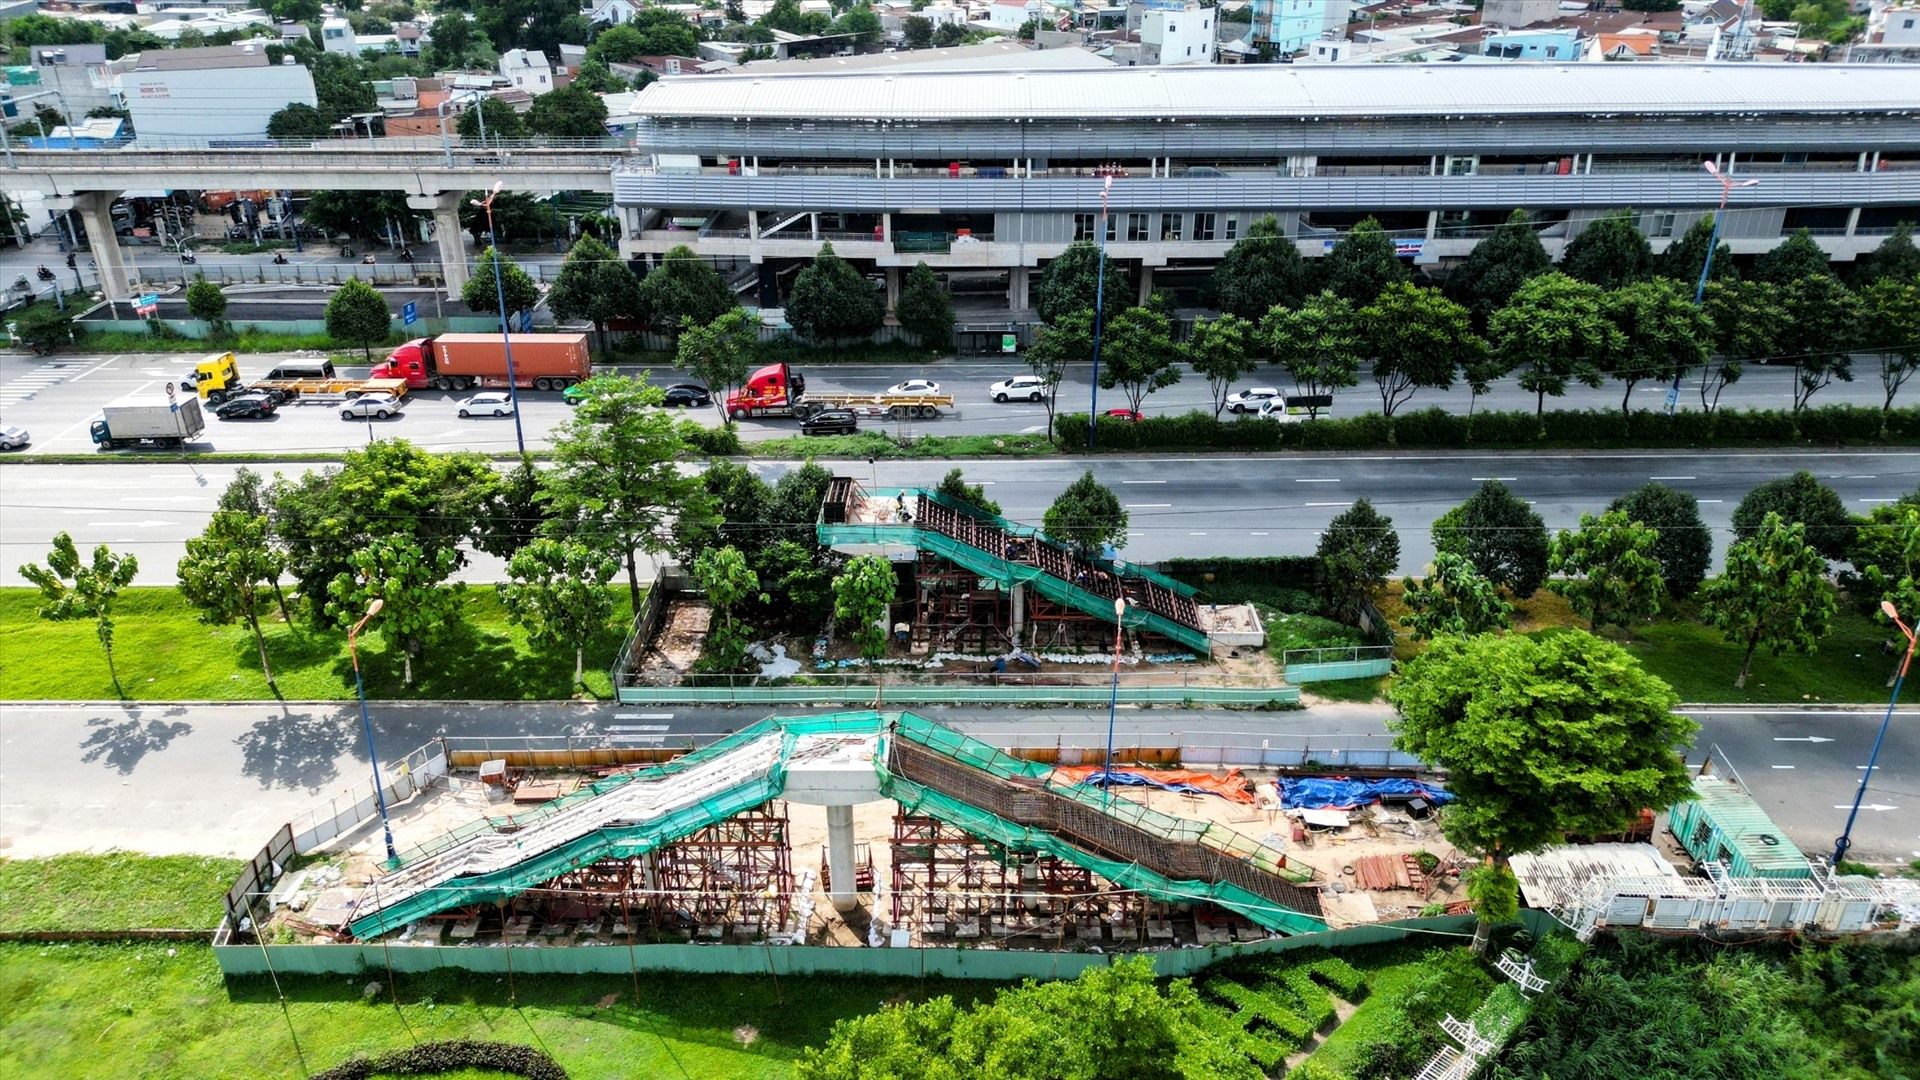 Trong đó, một phần cầu sẽ băng qua đường song hành bên trái xa lộ Hà Nội (hướng từ cầu Sài Gòn đi Suối Tiên), nối vào khu dân cư và trước trung tâm thương mại. Ở phía còn lại, cầu vượt qua tuyến xa lộ Hà Nội và đường song hành phải. 